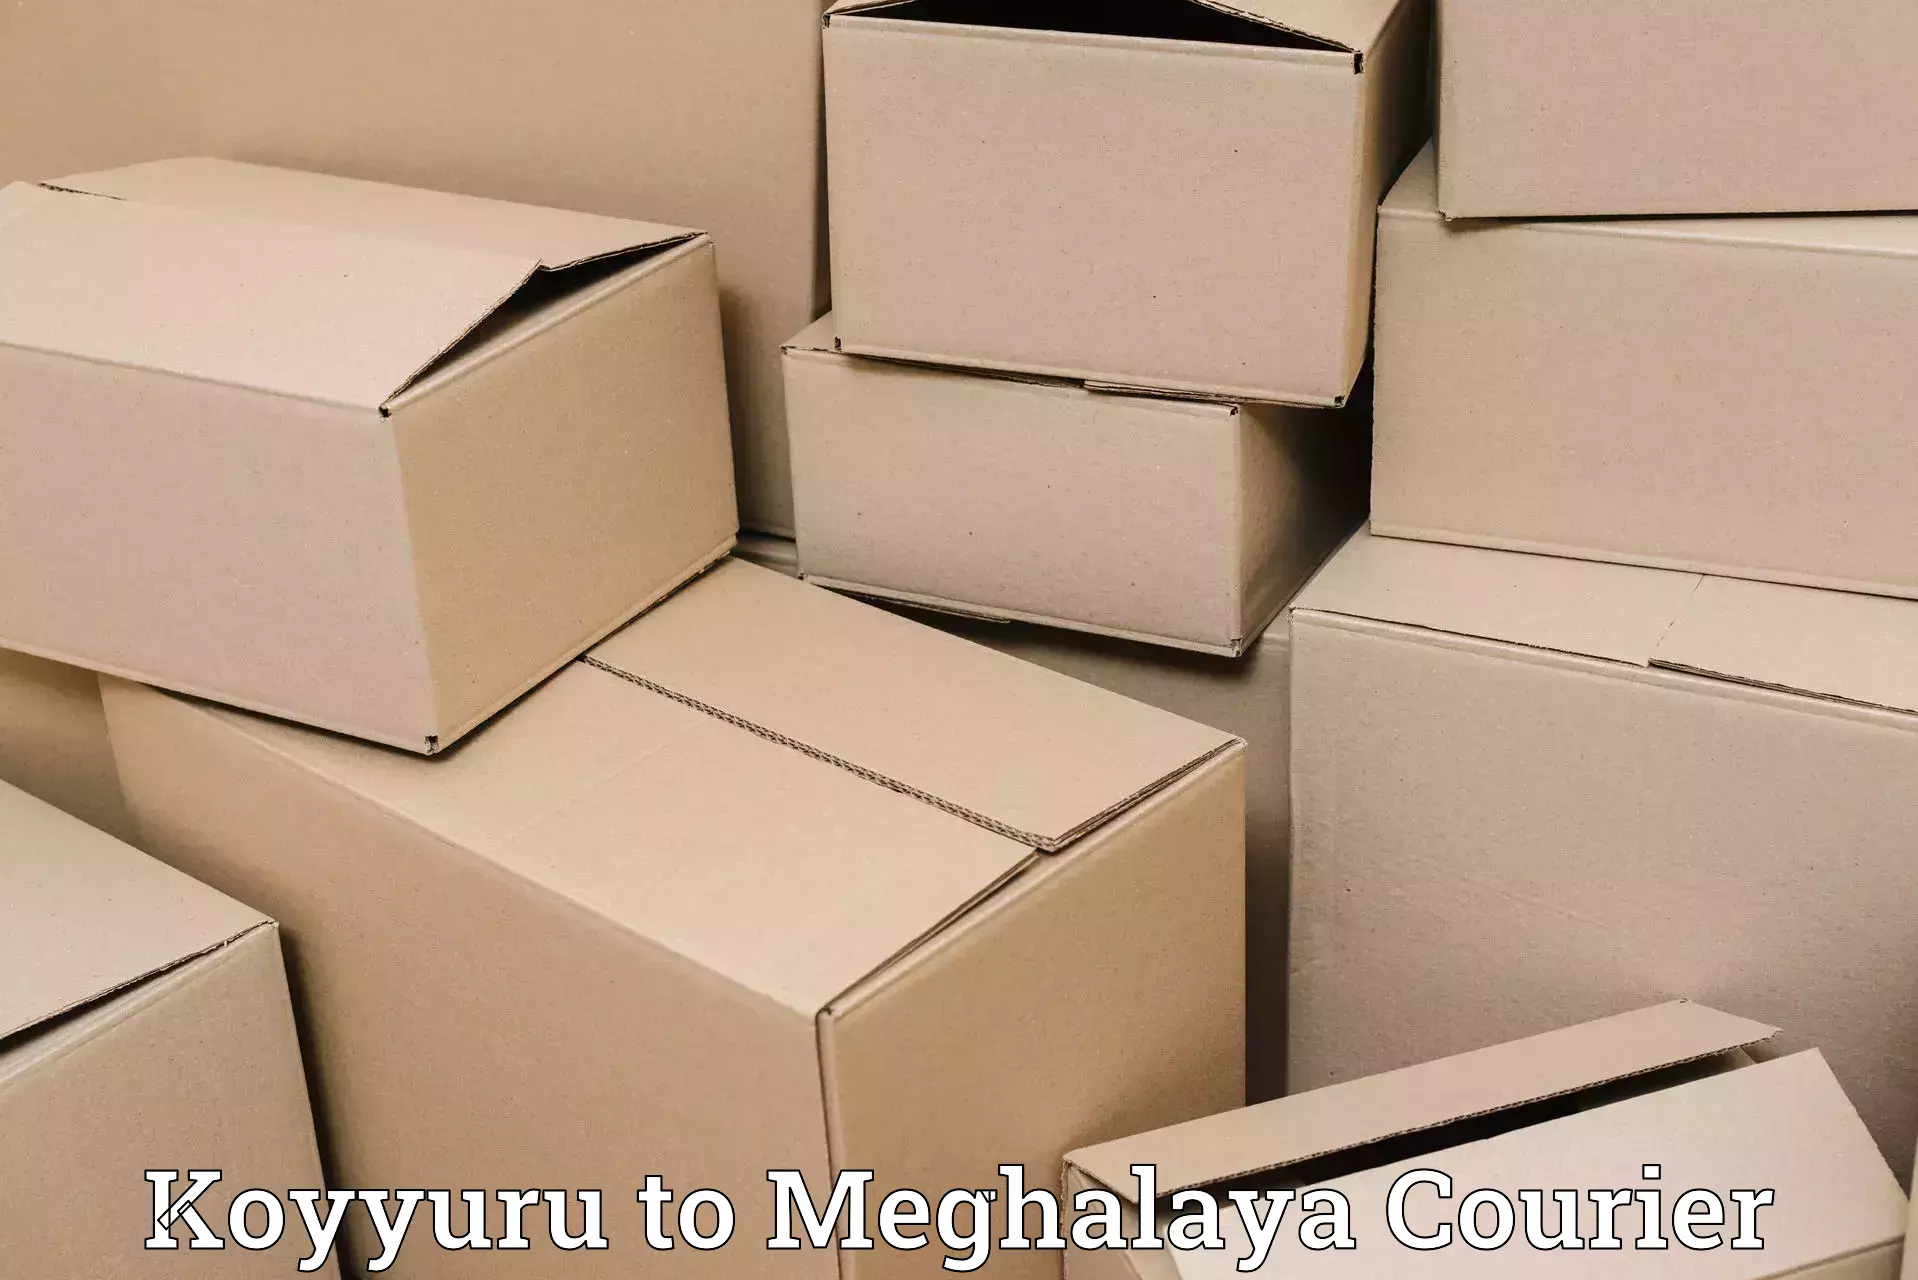 Efficient parcel delivery Koyyuru to Cherrapunji